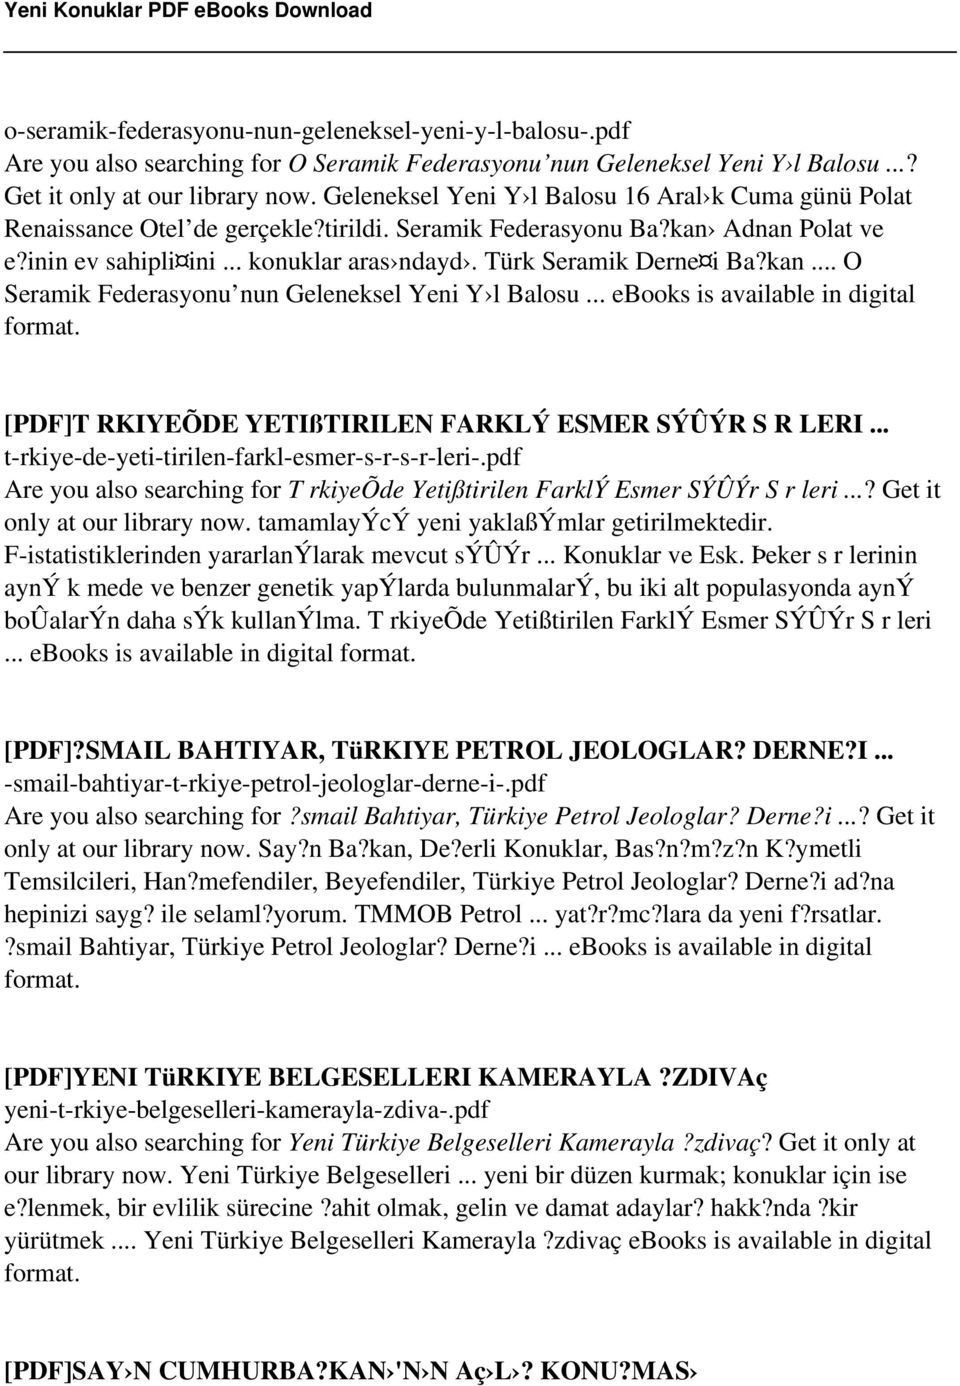 Türk Seramik Derne i Ba?kan... O Seramik Federasyonu nun Geleneksel Yeni Y l Balosu... ebooks is available in digital format. [PDF]T RKIYEÕDE YETIßTIRILEN FARKLÝ ESMER SÝÛÝR S R LERI.